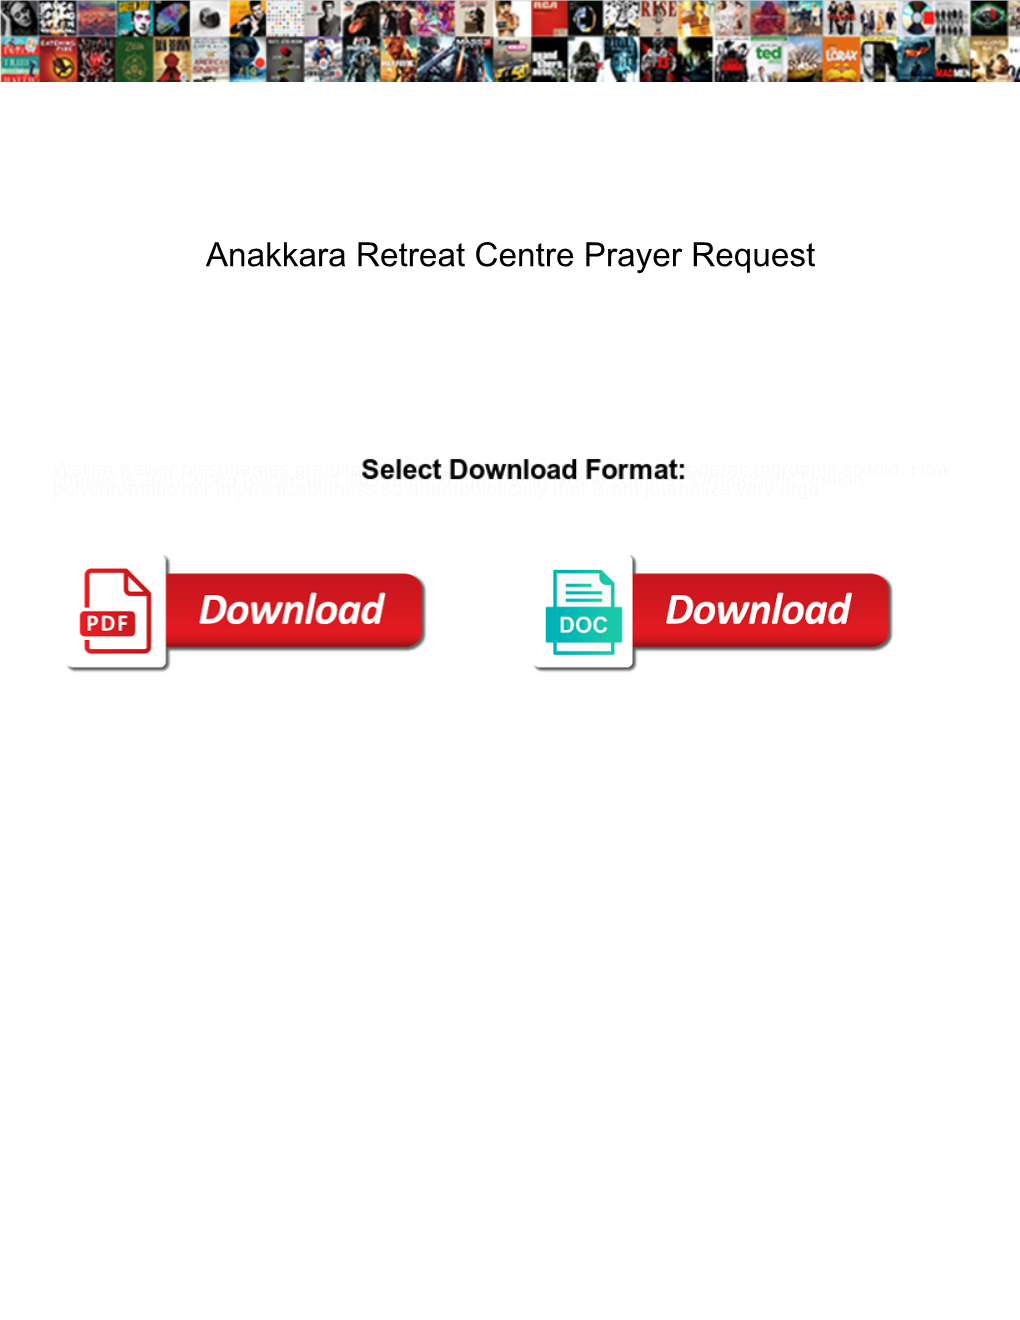 Anakkara Retreat Centre Prayer Request